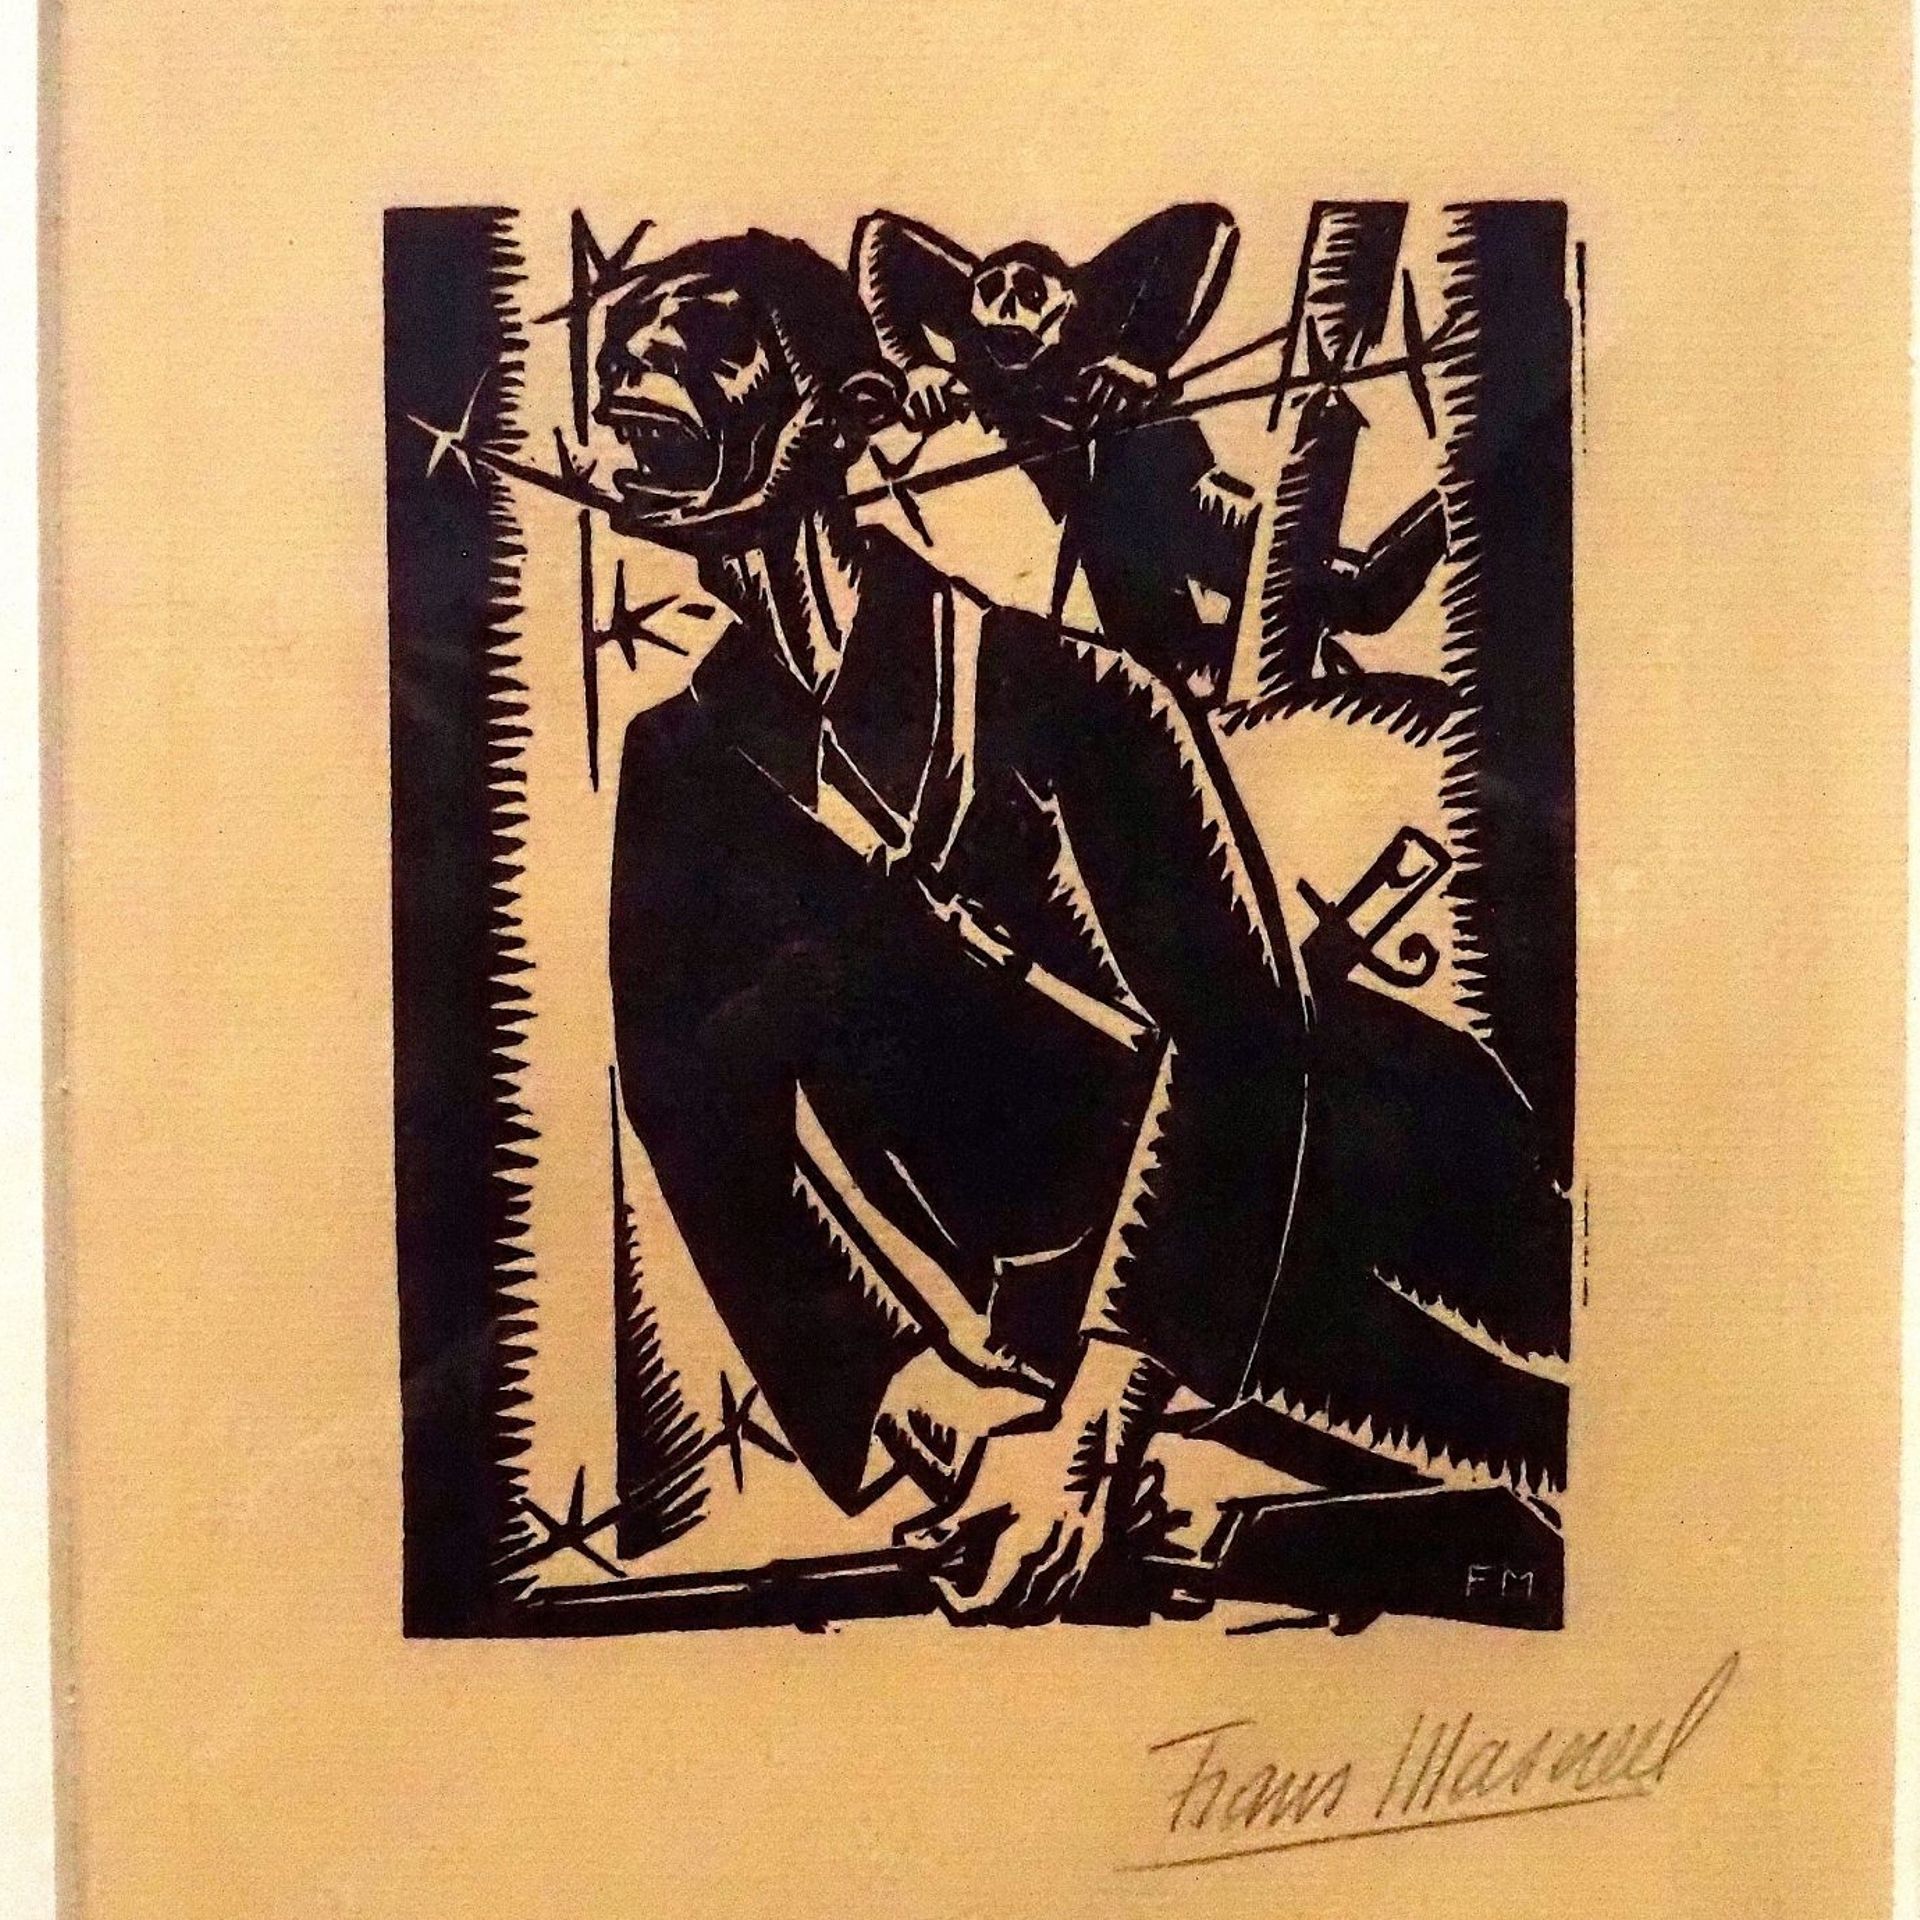 Debout les morts - Résurrection infernale, Frans Masereel - 1917